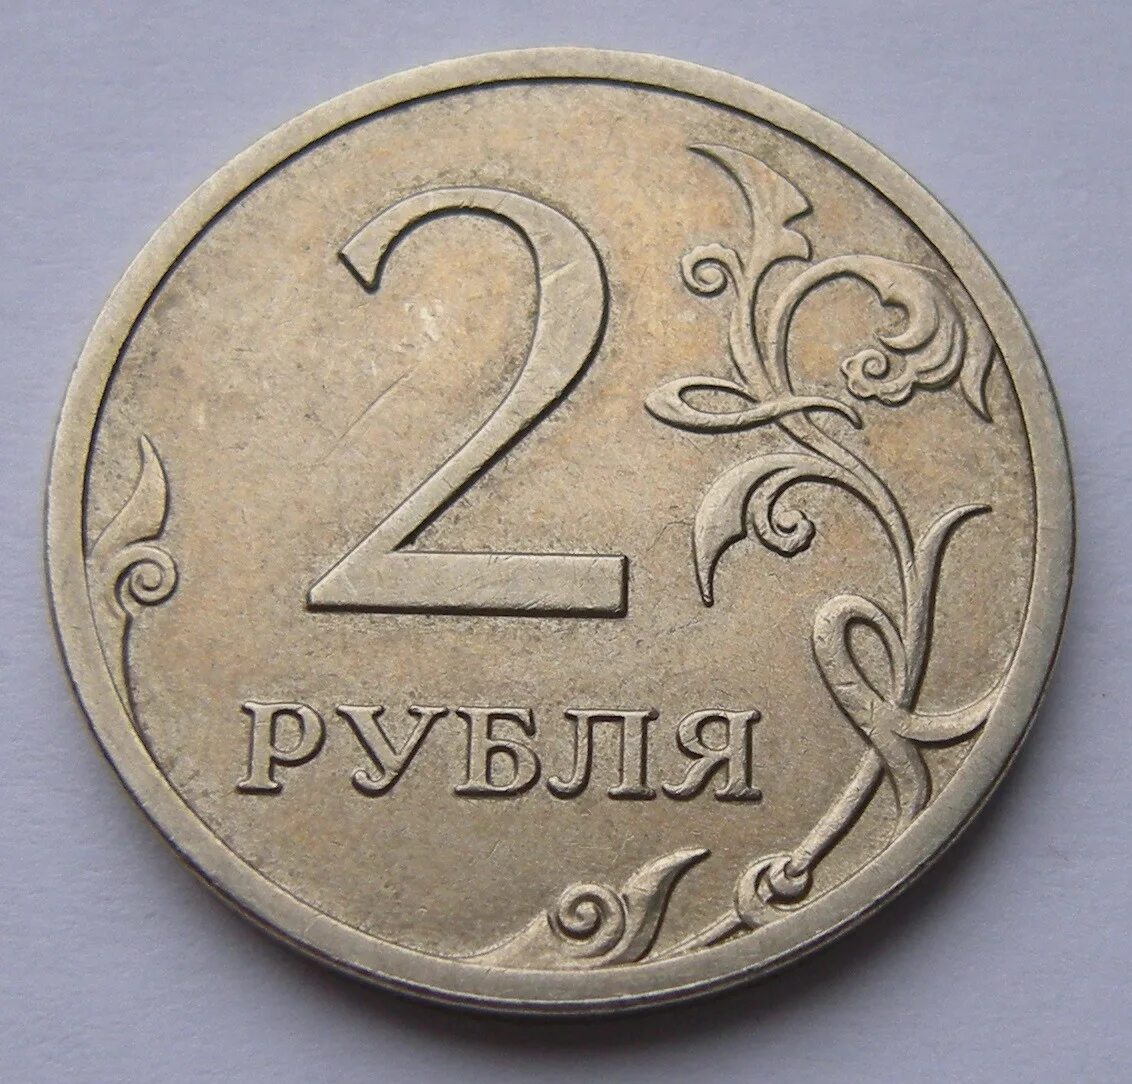 3 01 в рублях. Монета 2 рубля. Монеты 1 2 5 рублей. Изображение монет. Монеты 1 руб 2 руб.